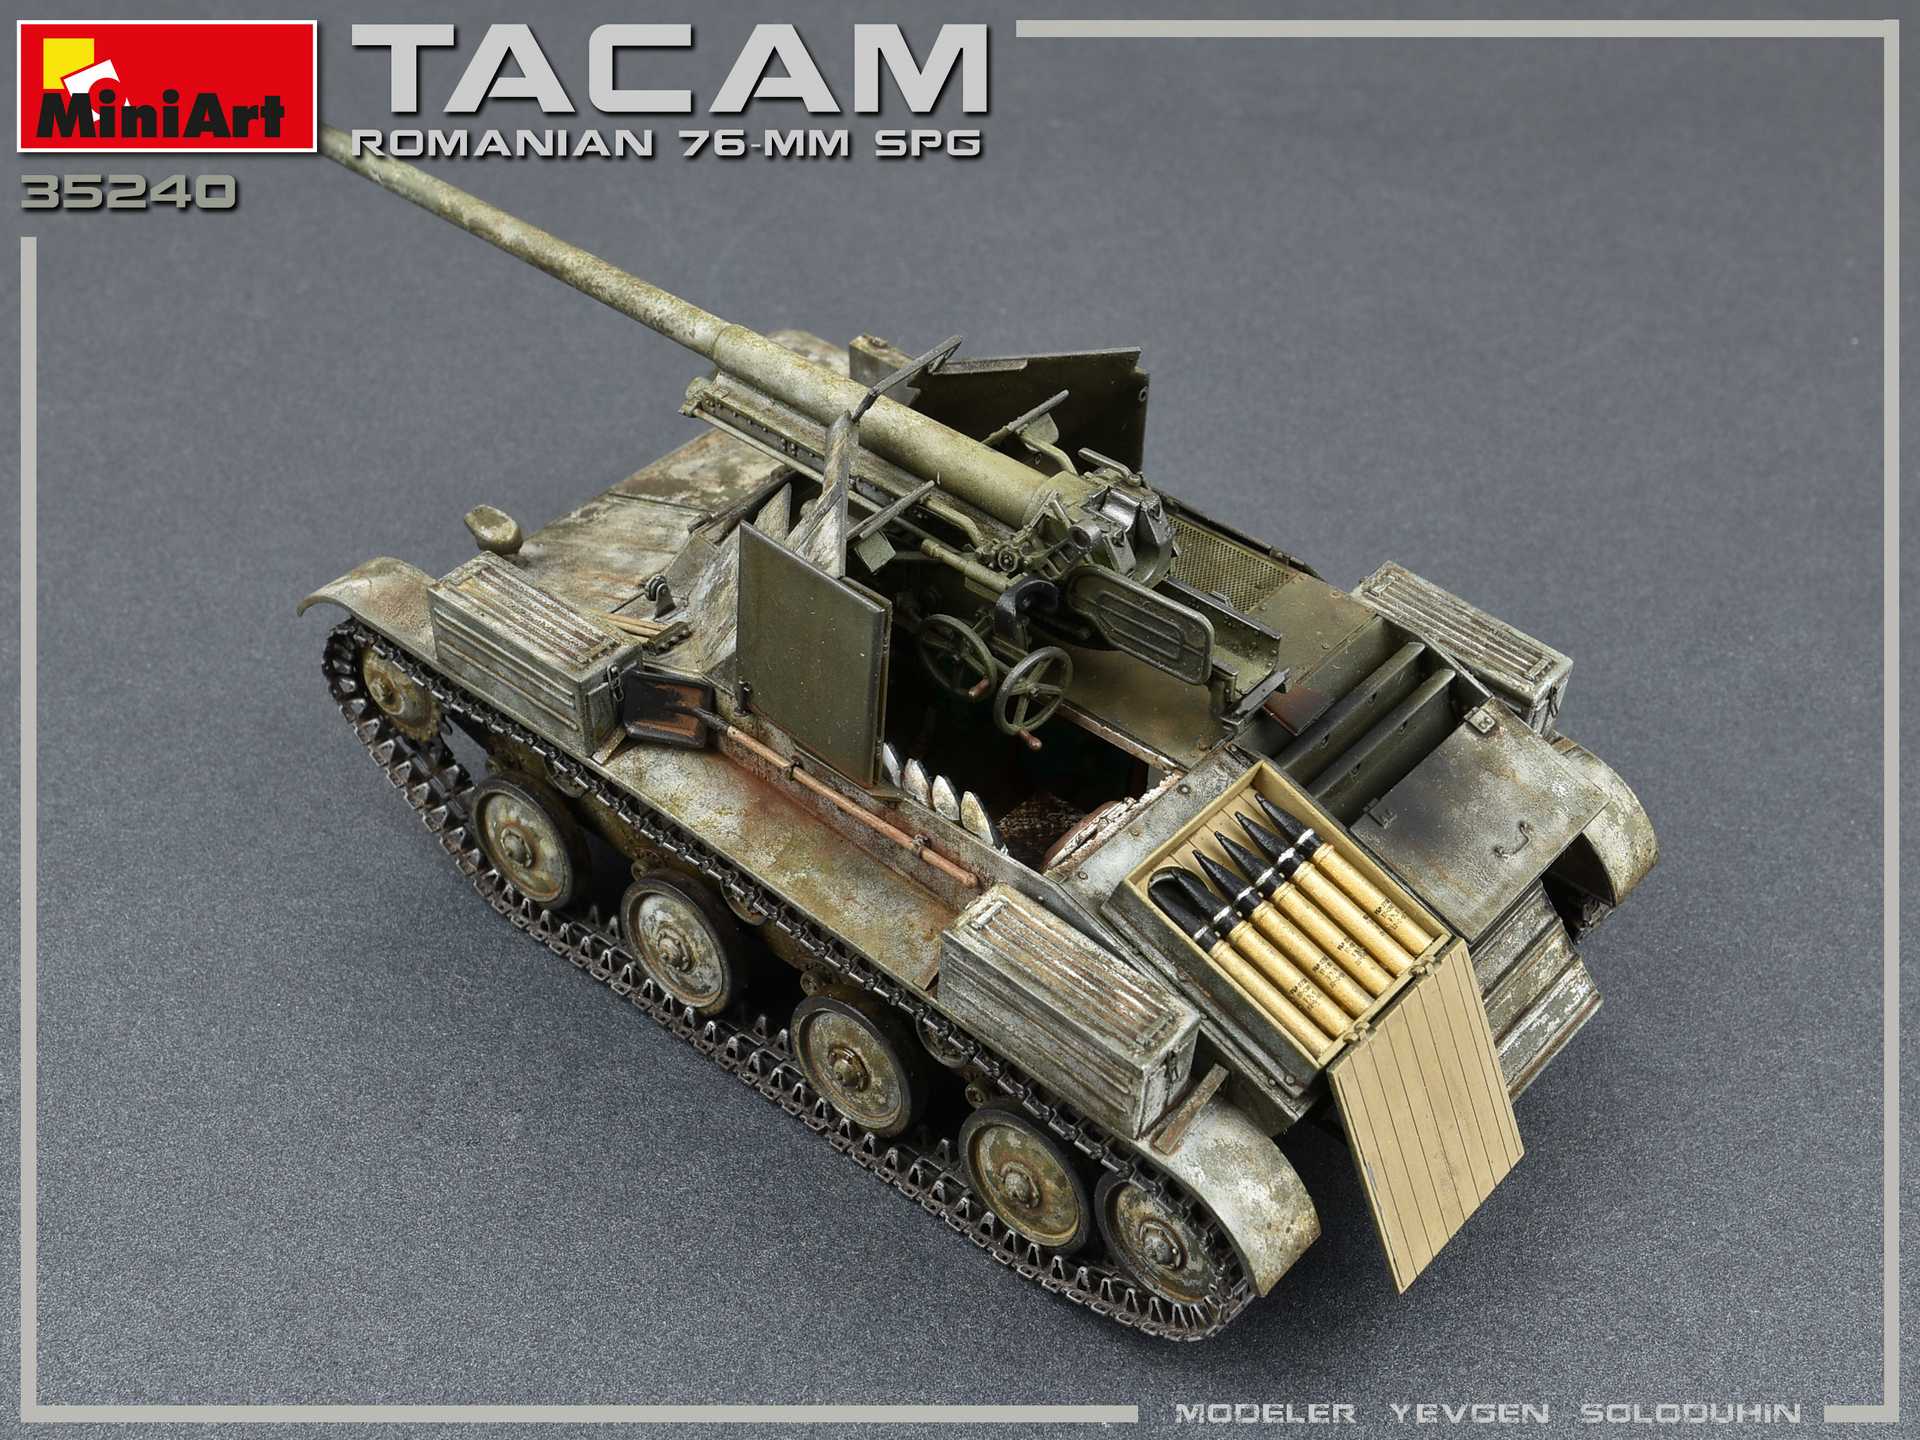 Така т. Румынская САУ TACAM T-60. Румынская 76-мм САУ “TACAM” T-60. Модель TACAM-t60. TACAM Romanian 76-мм.